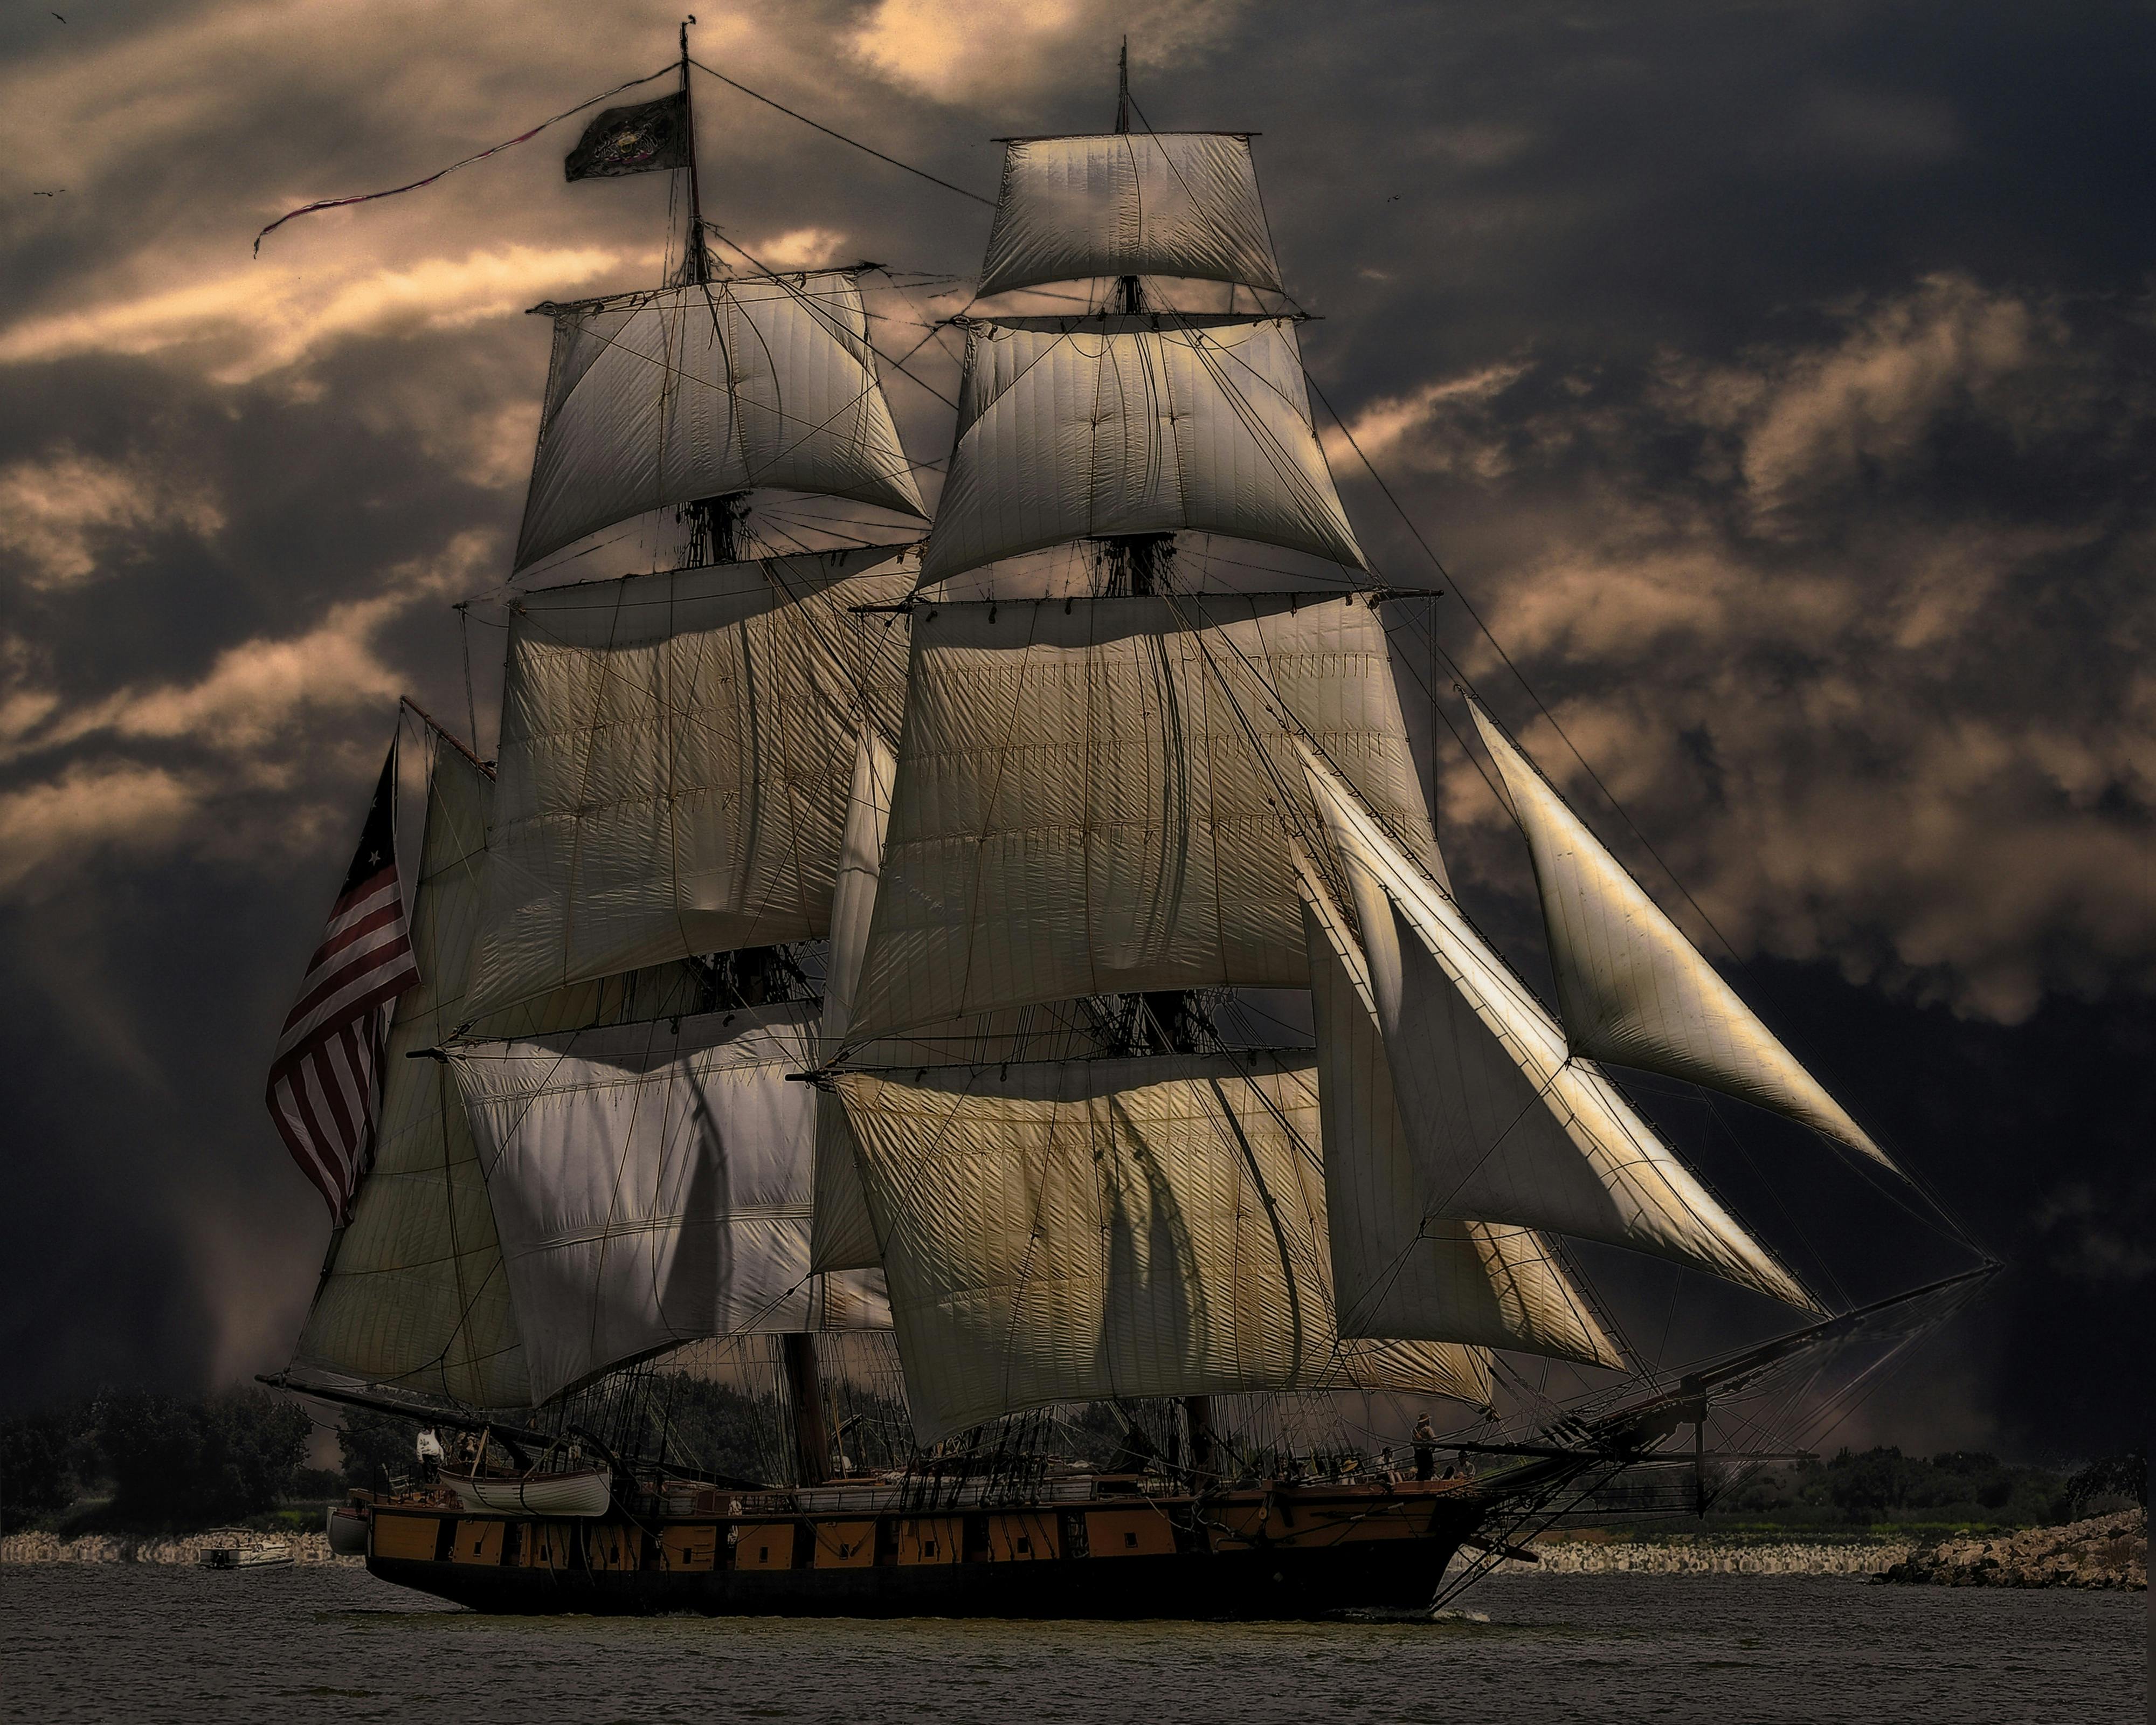 sloop sailing ship